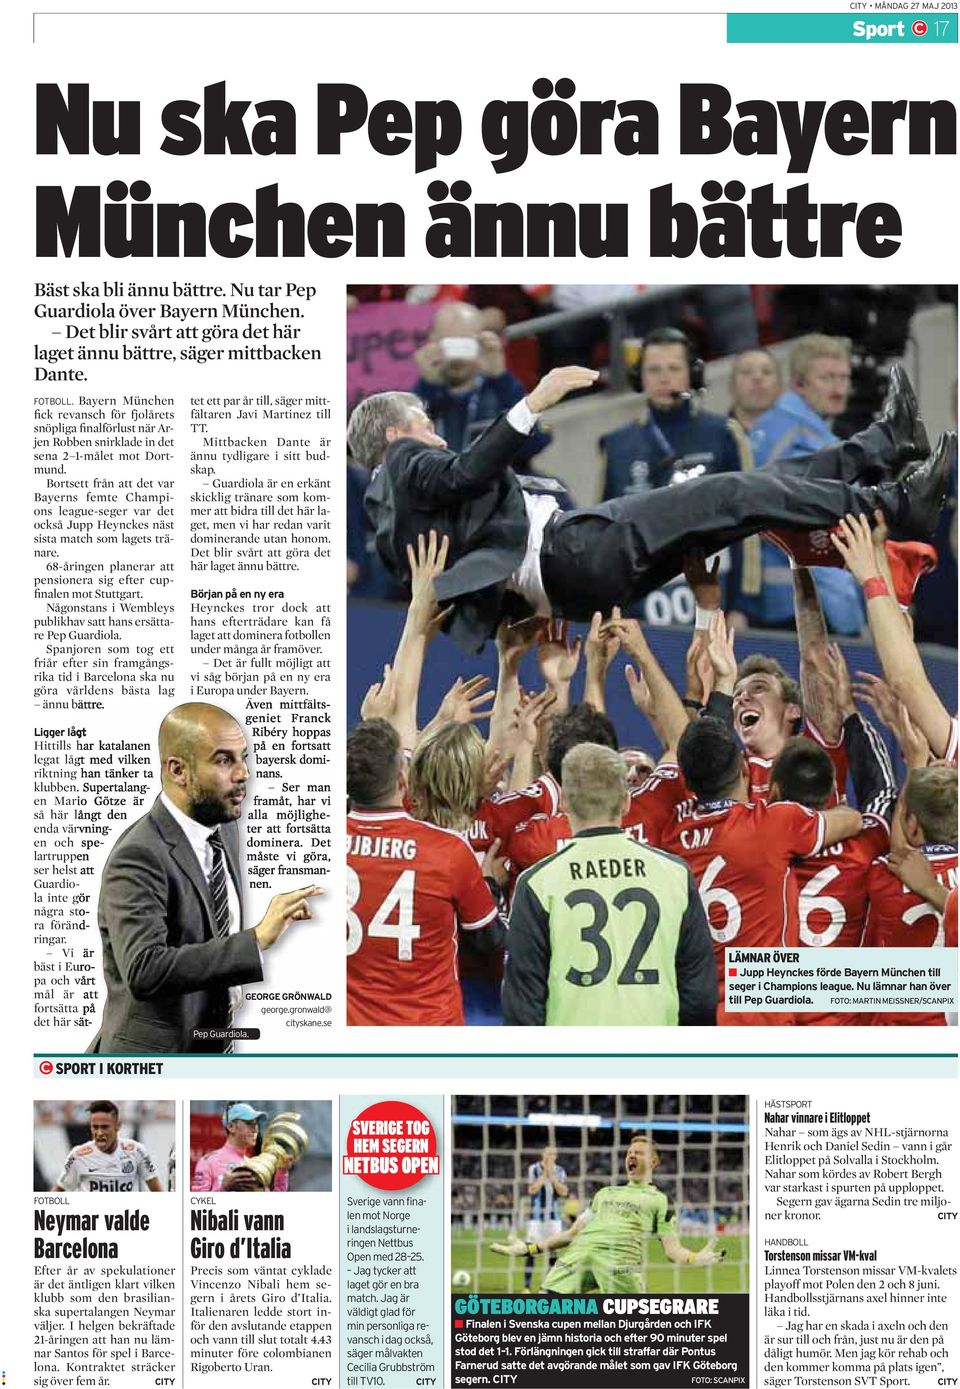 Bortsett från att det var Bayerns femte Champions league-seger var det också Jupp Heynckes näst sista match som lagets tränare. 68-åringen planerar att pensionera sig efter cupfinalen mot Stuttgart.